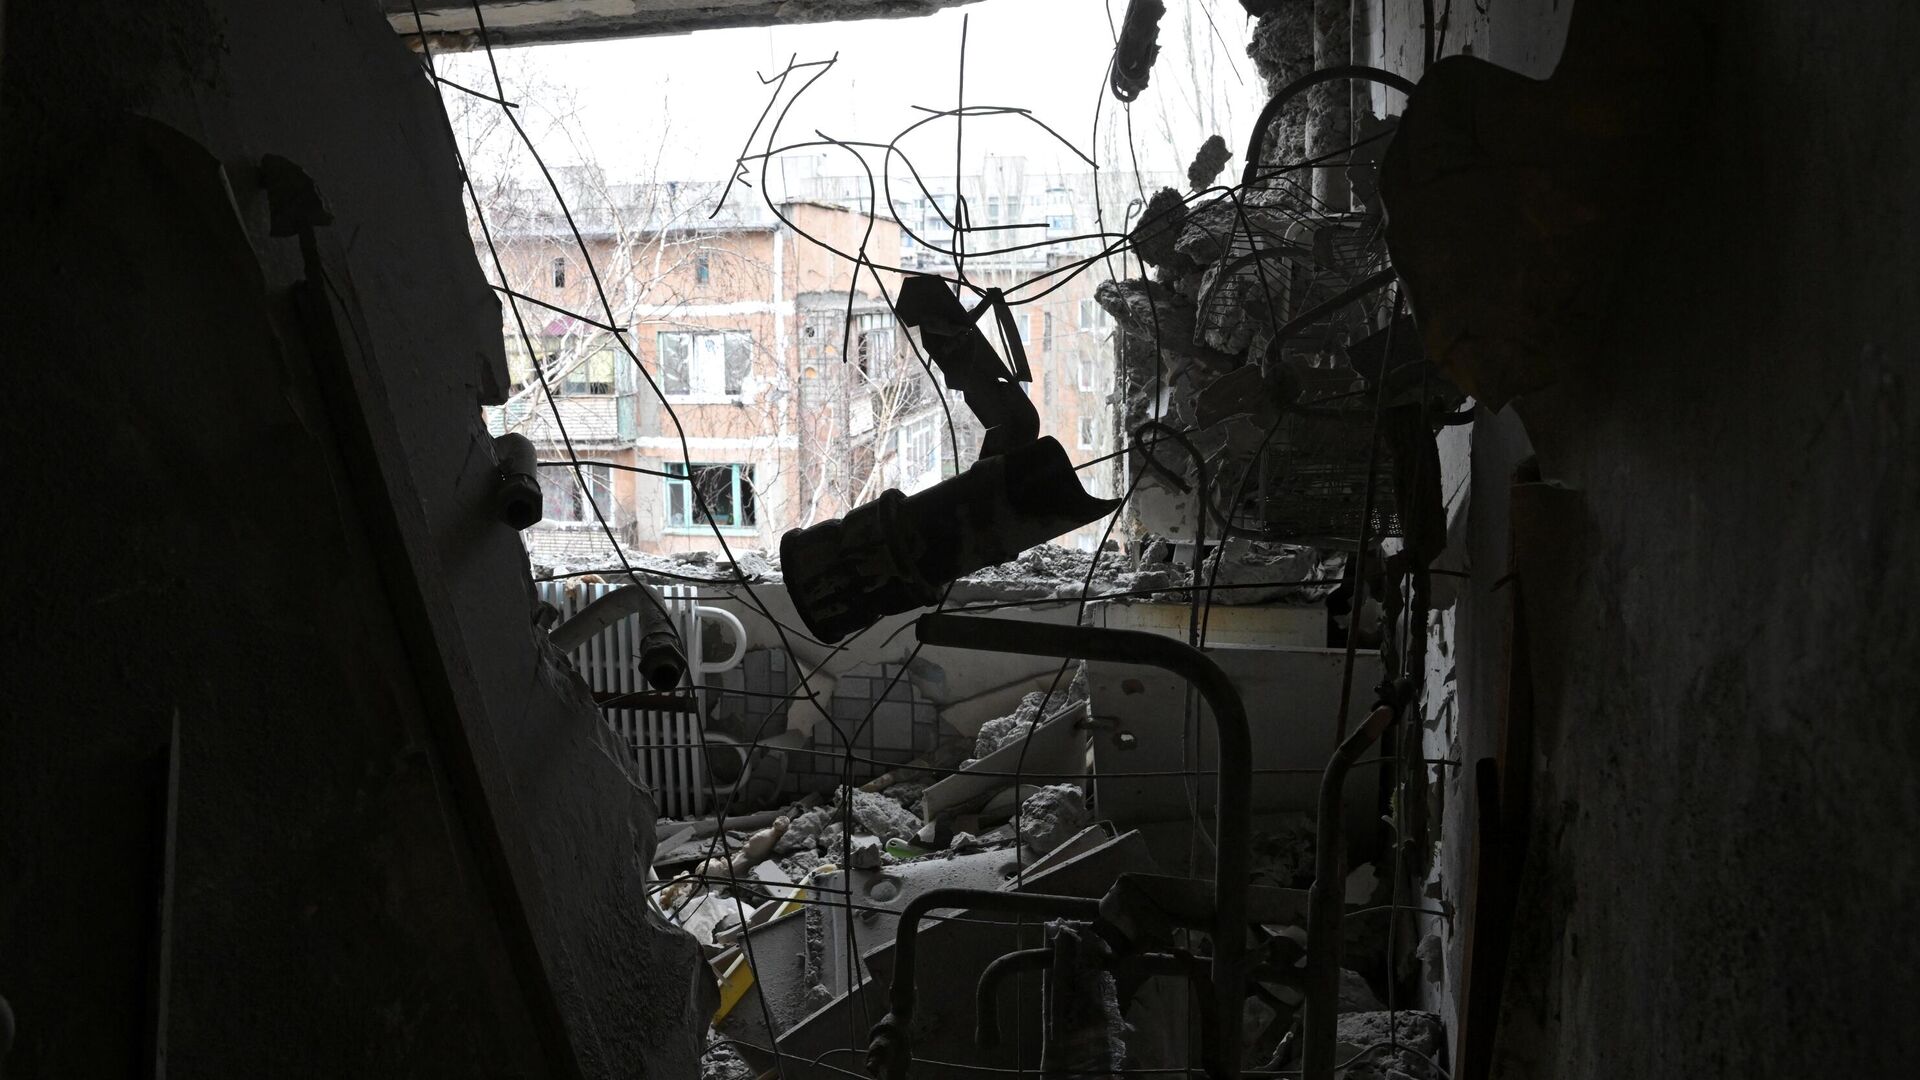 Квартира, пострадавшая в результате прямого попадания снаряда в жилой дом в Горловке - РИА Новости, 1920, 02.03.2022